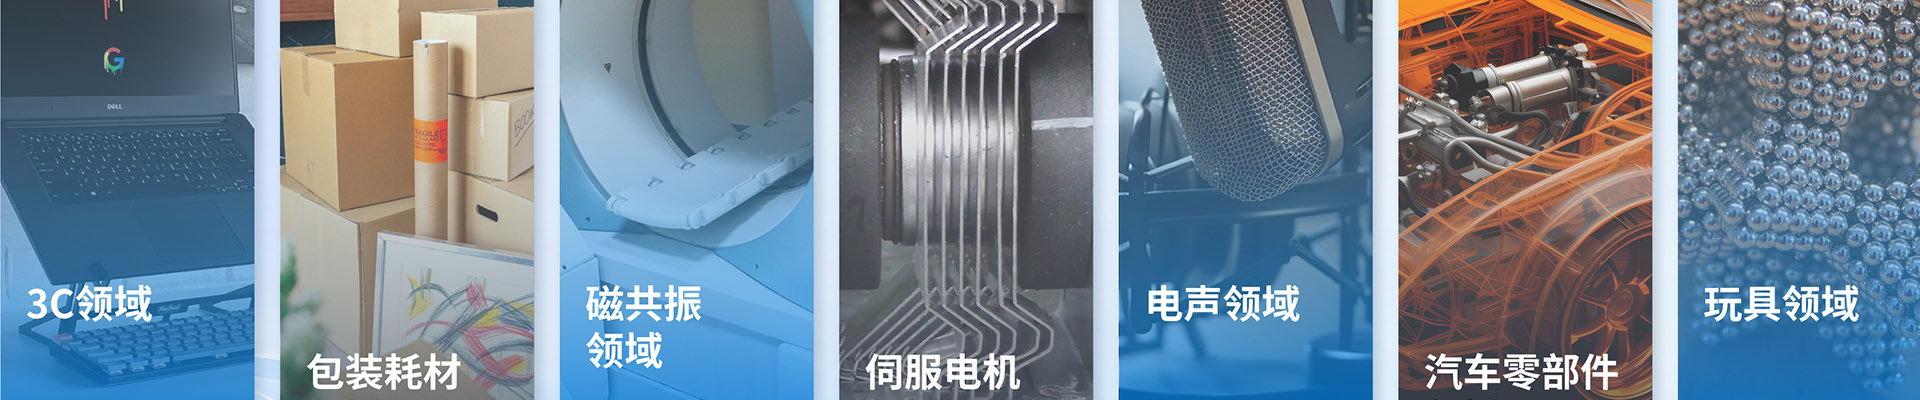 方形钕铁硼磁铁-钕铁硼系列-宁波允亿磁业科技有限公司